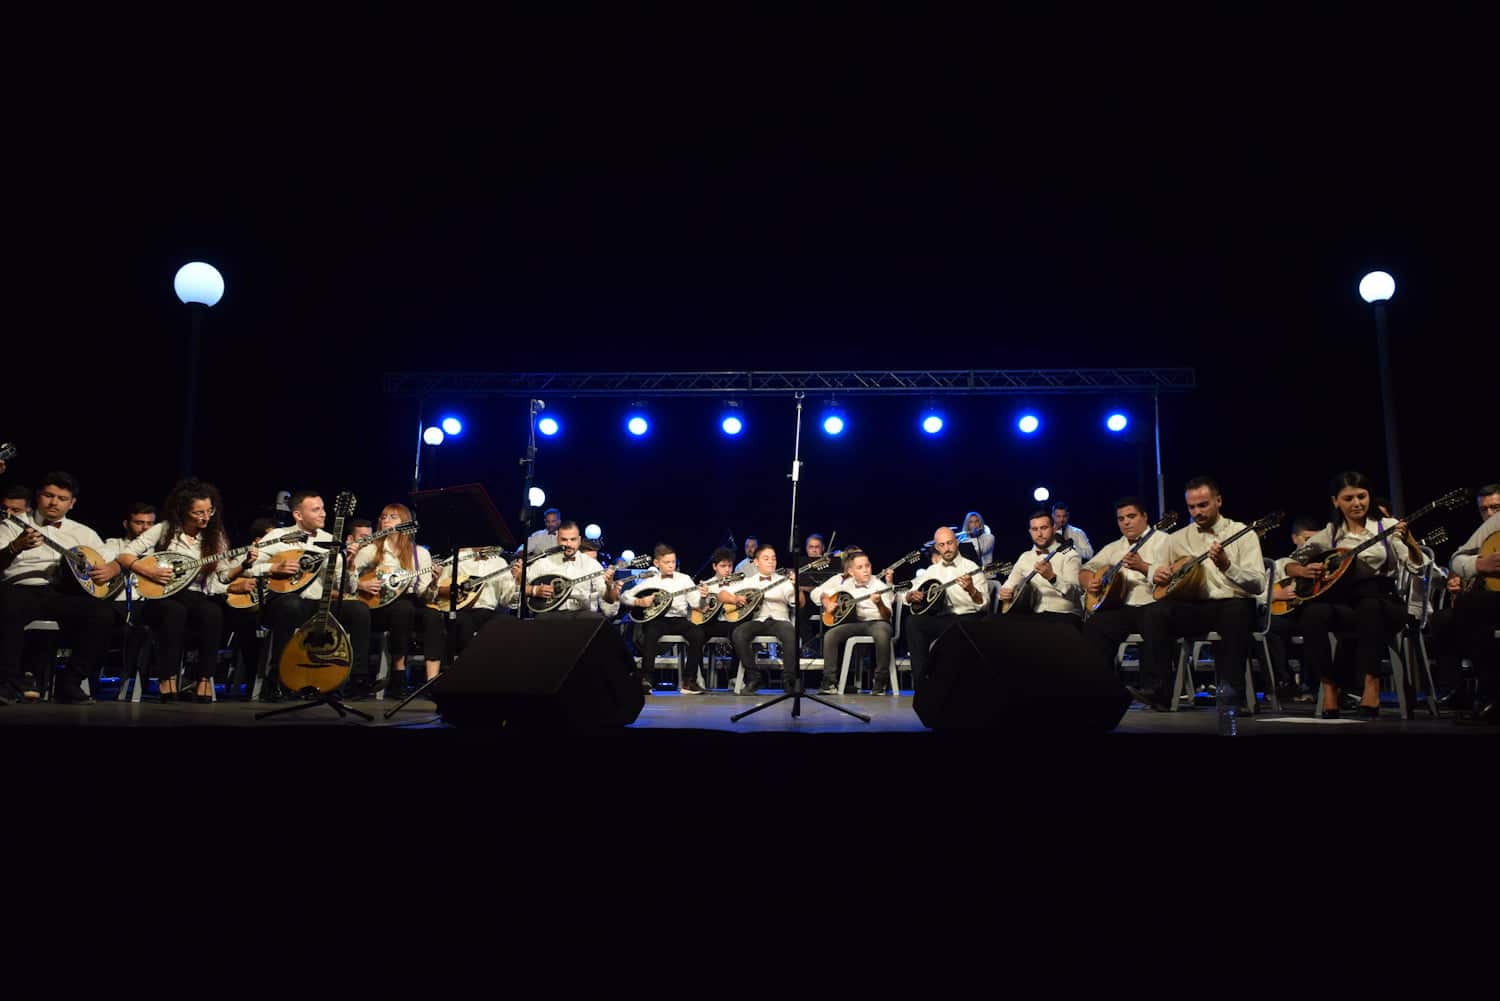 Πάτρα: «Μπουζούκια στην Πανσέληνο» - Η συναυλία της «Λαϊκής Συμφωνικής Ορχήστρας «Εν Χορδώ – Θεόδωρος Γεωργόπουλος»